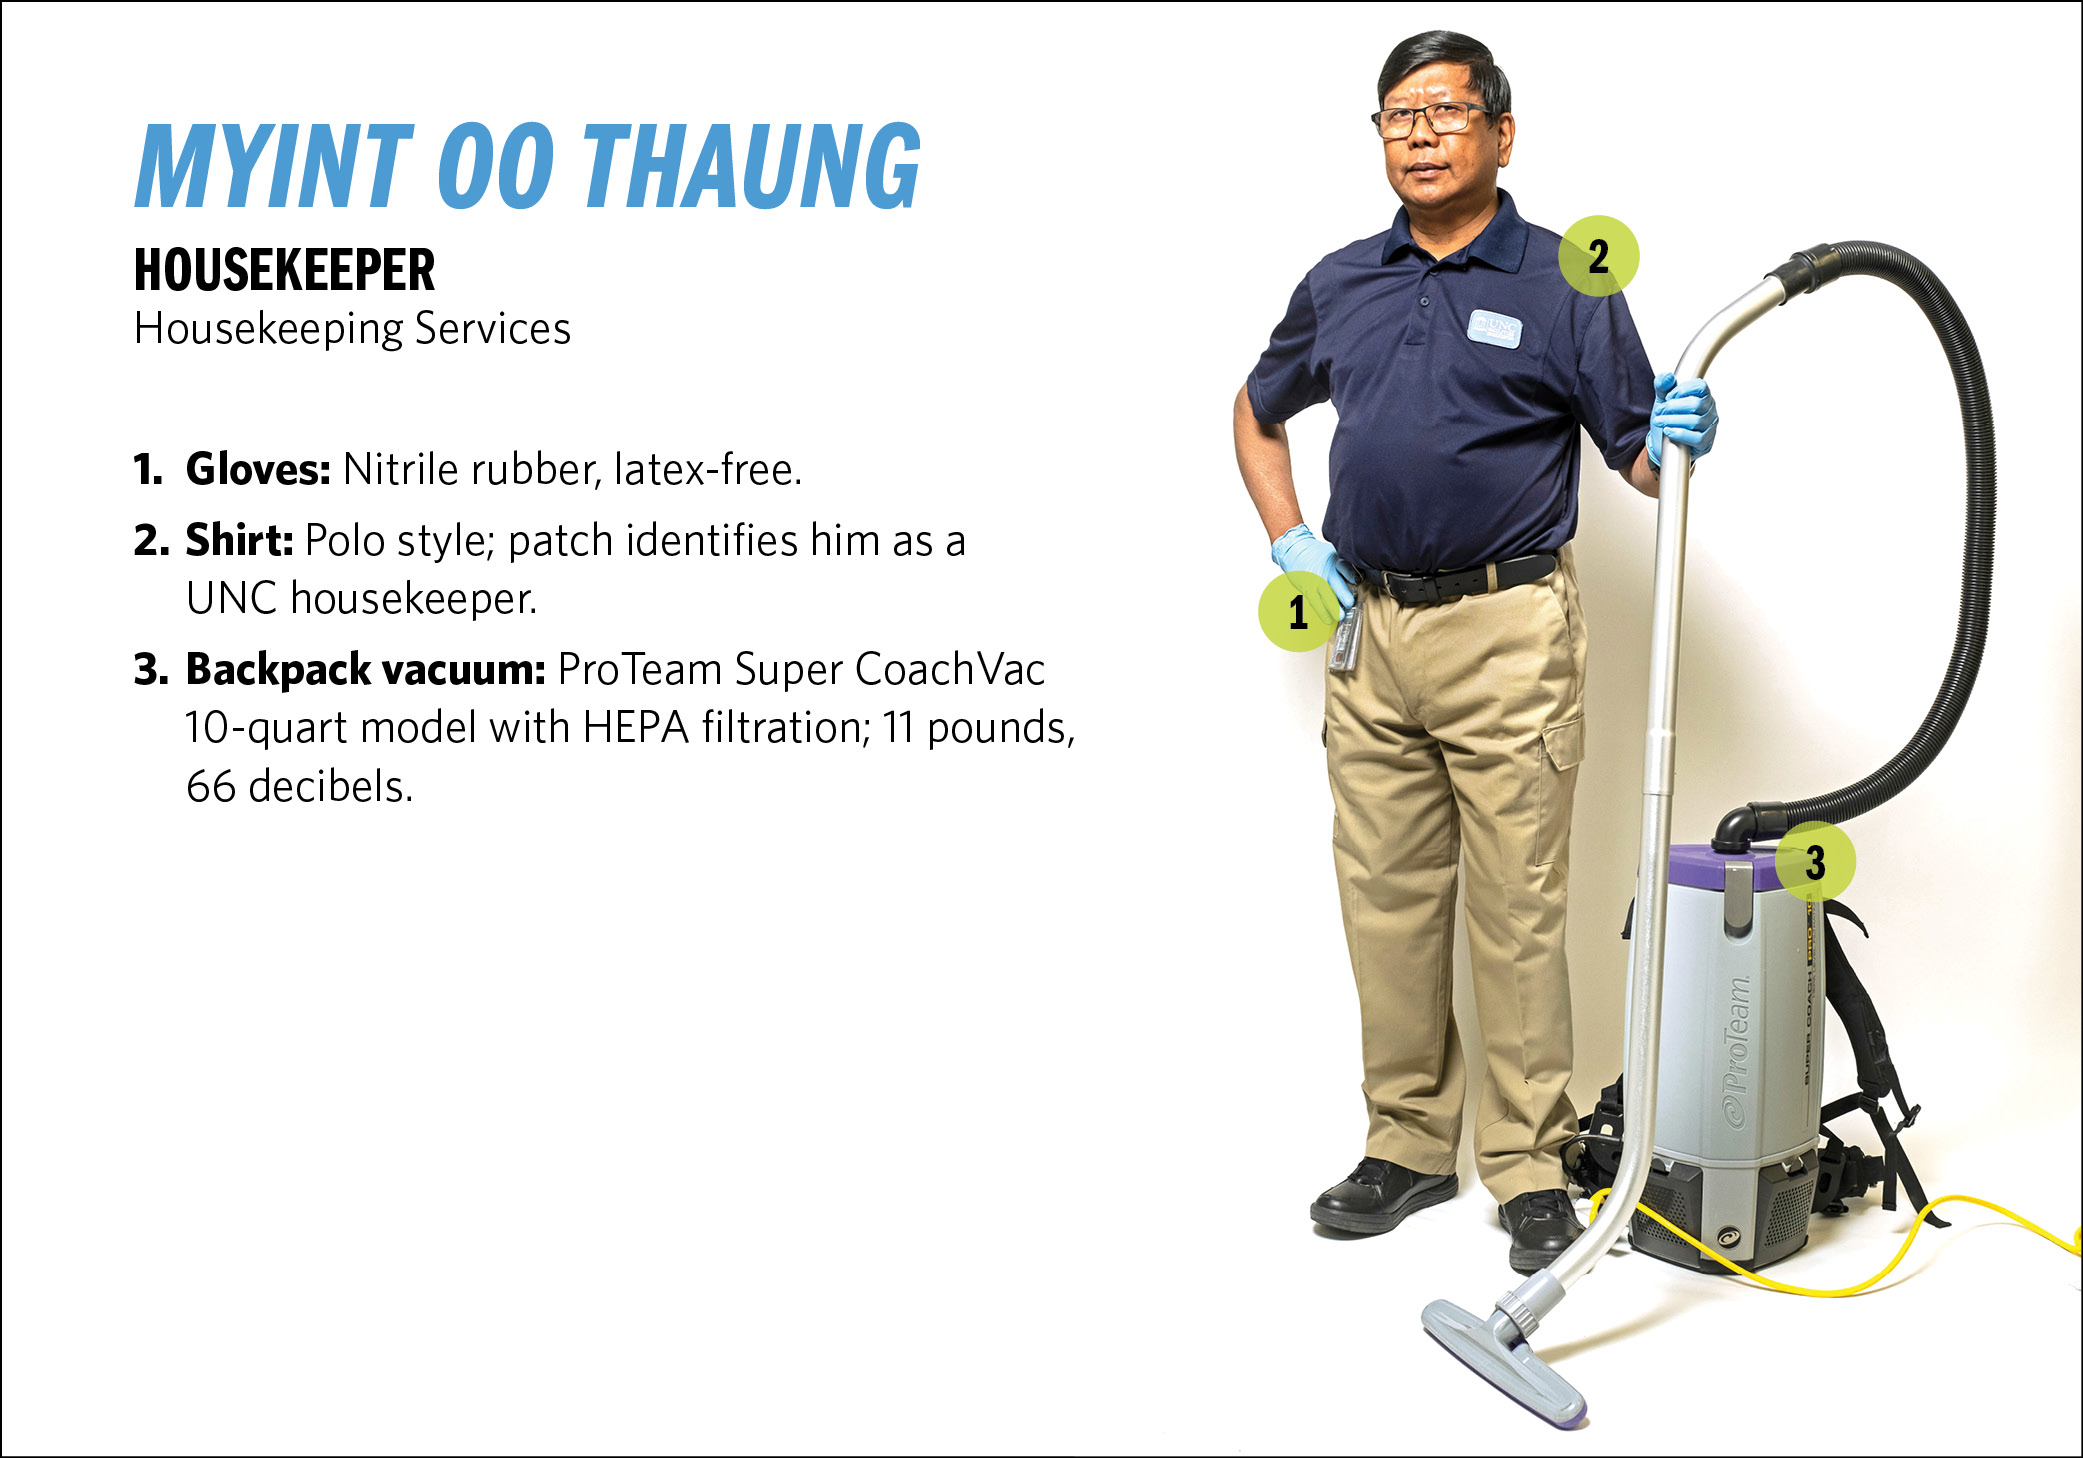 Housekeeper Myint Oo Thaung, his ProTeam Super CoachVac 10-quart backpack vacuum; nitrile, latex-free gloves; shirt and U.N.C. Housekeeper” patch.